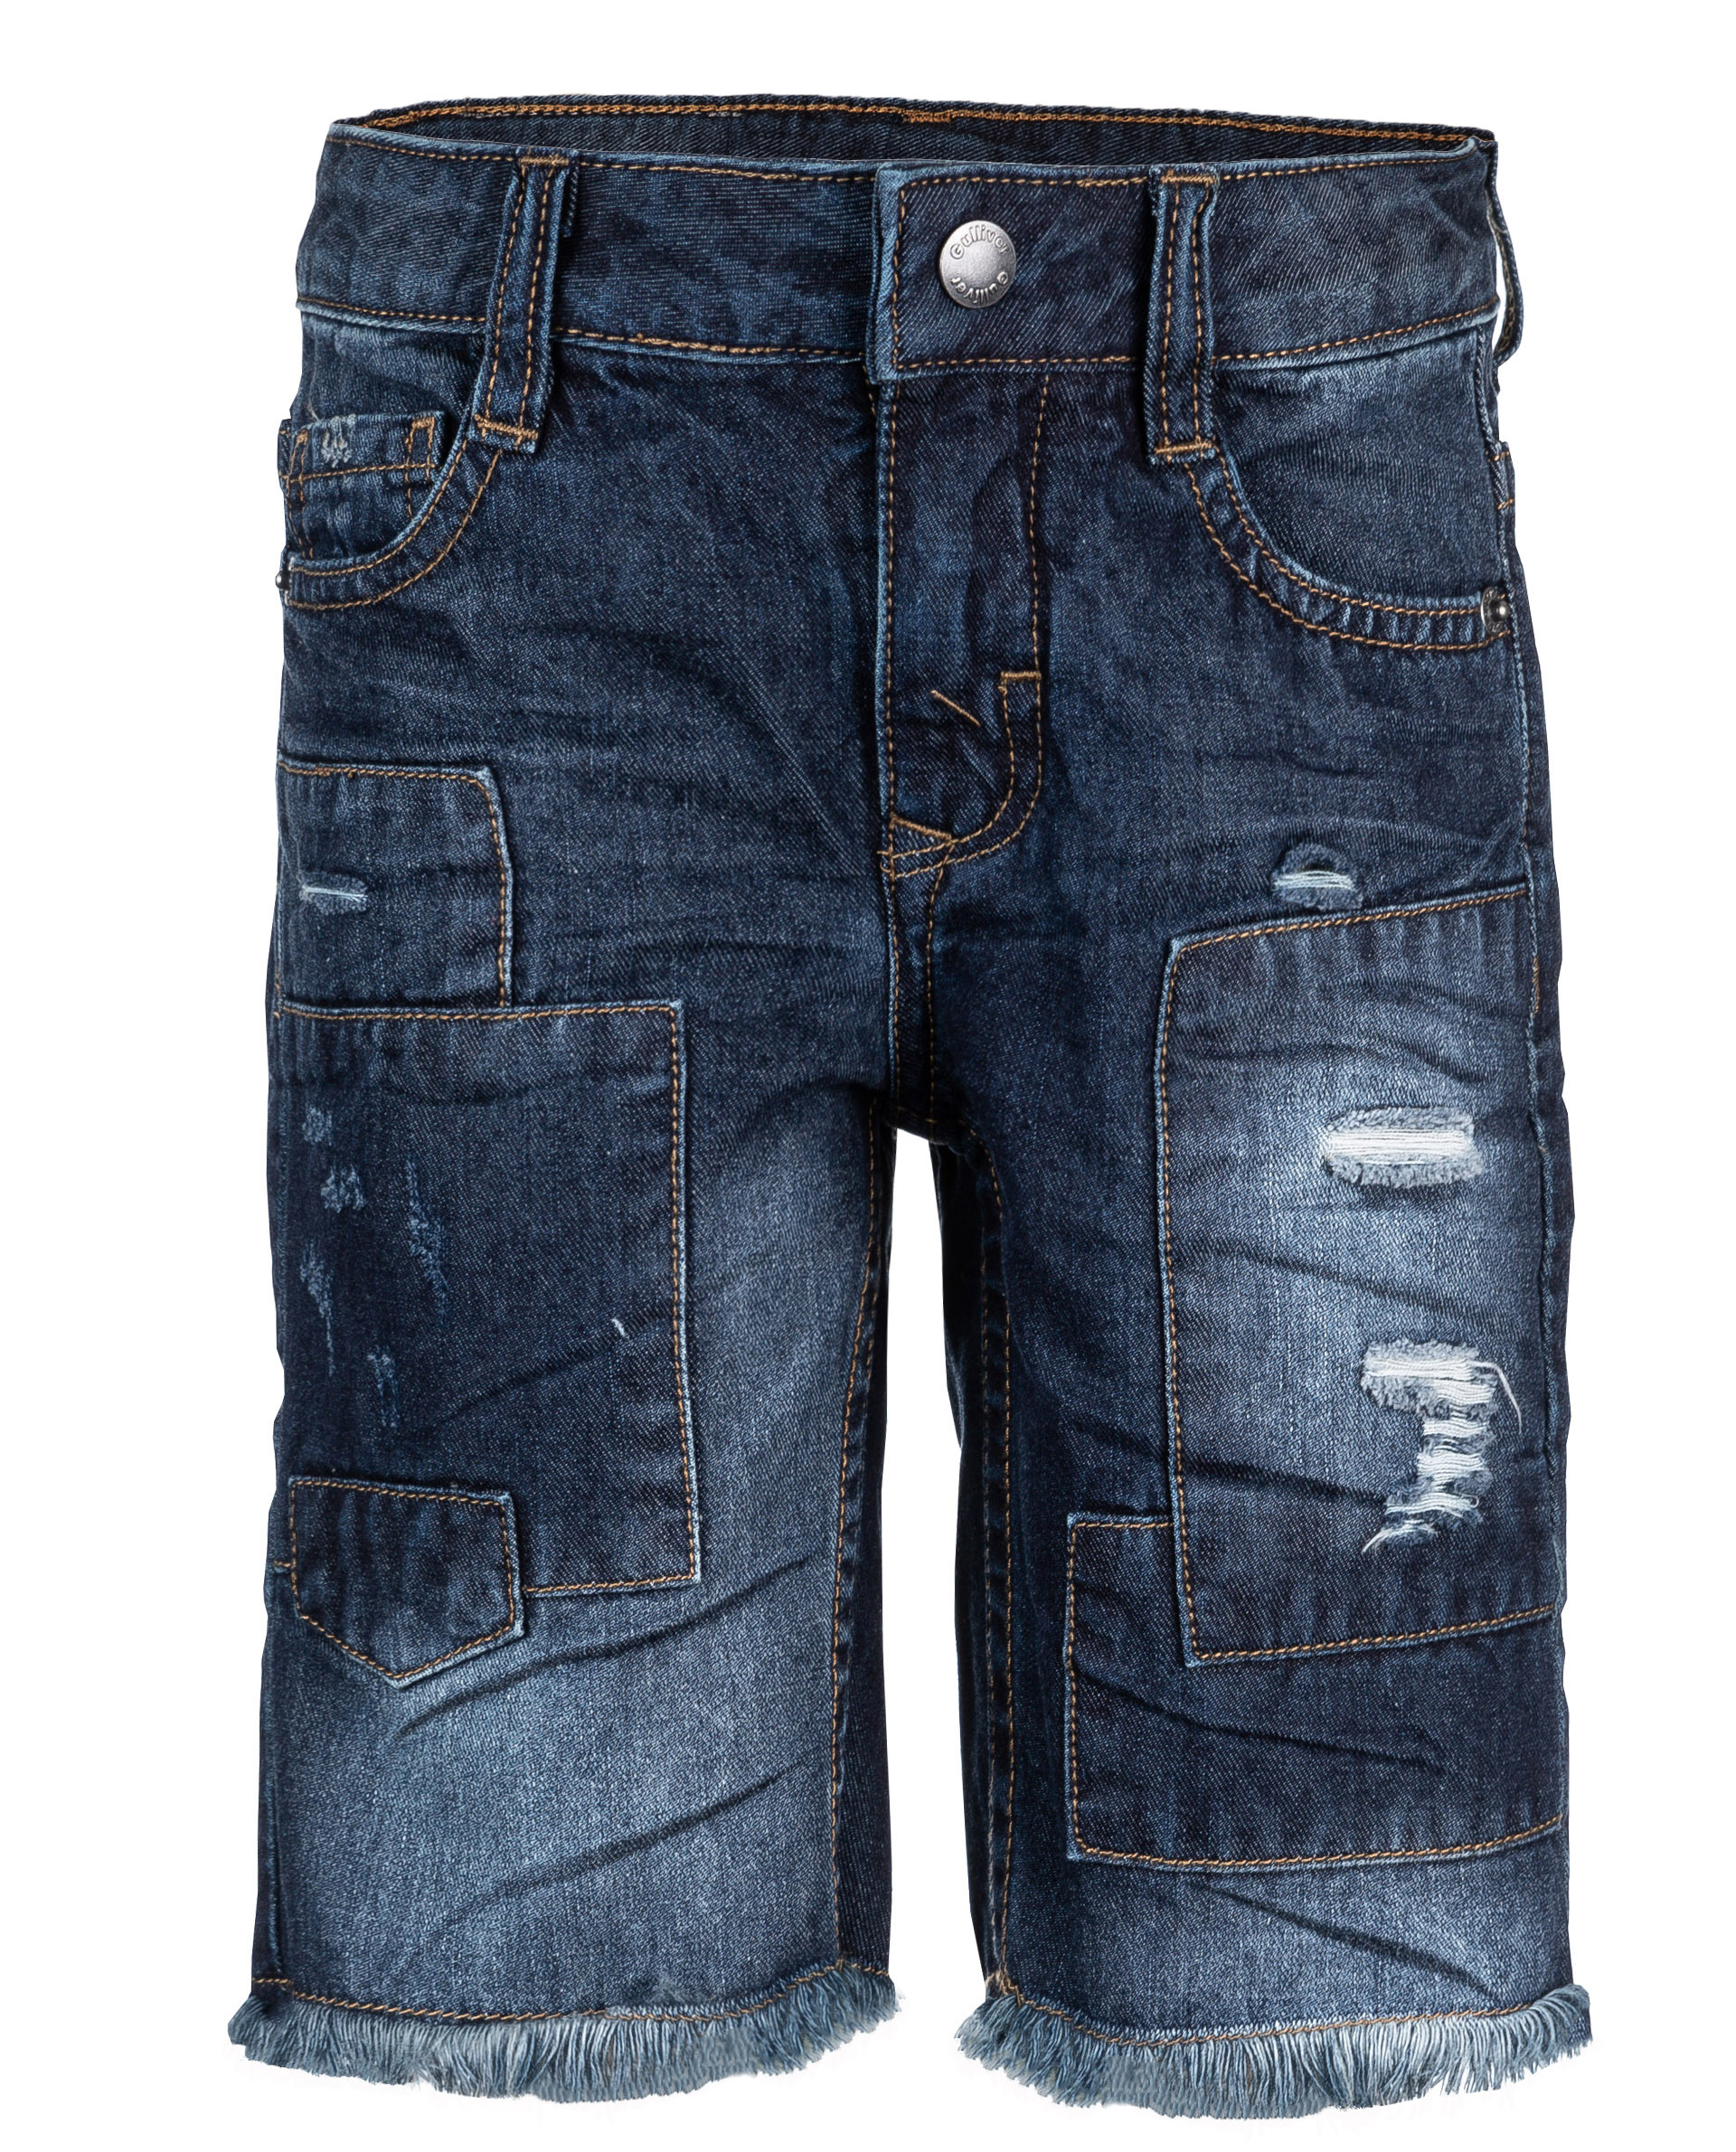 11906BMC6003, Синие джинсовые шорты Gulliver, синий, 98, Мужской, ВЕСНА/ЛЕТО 2019  - купить со скидкой